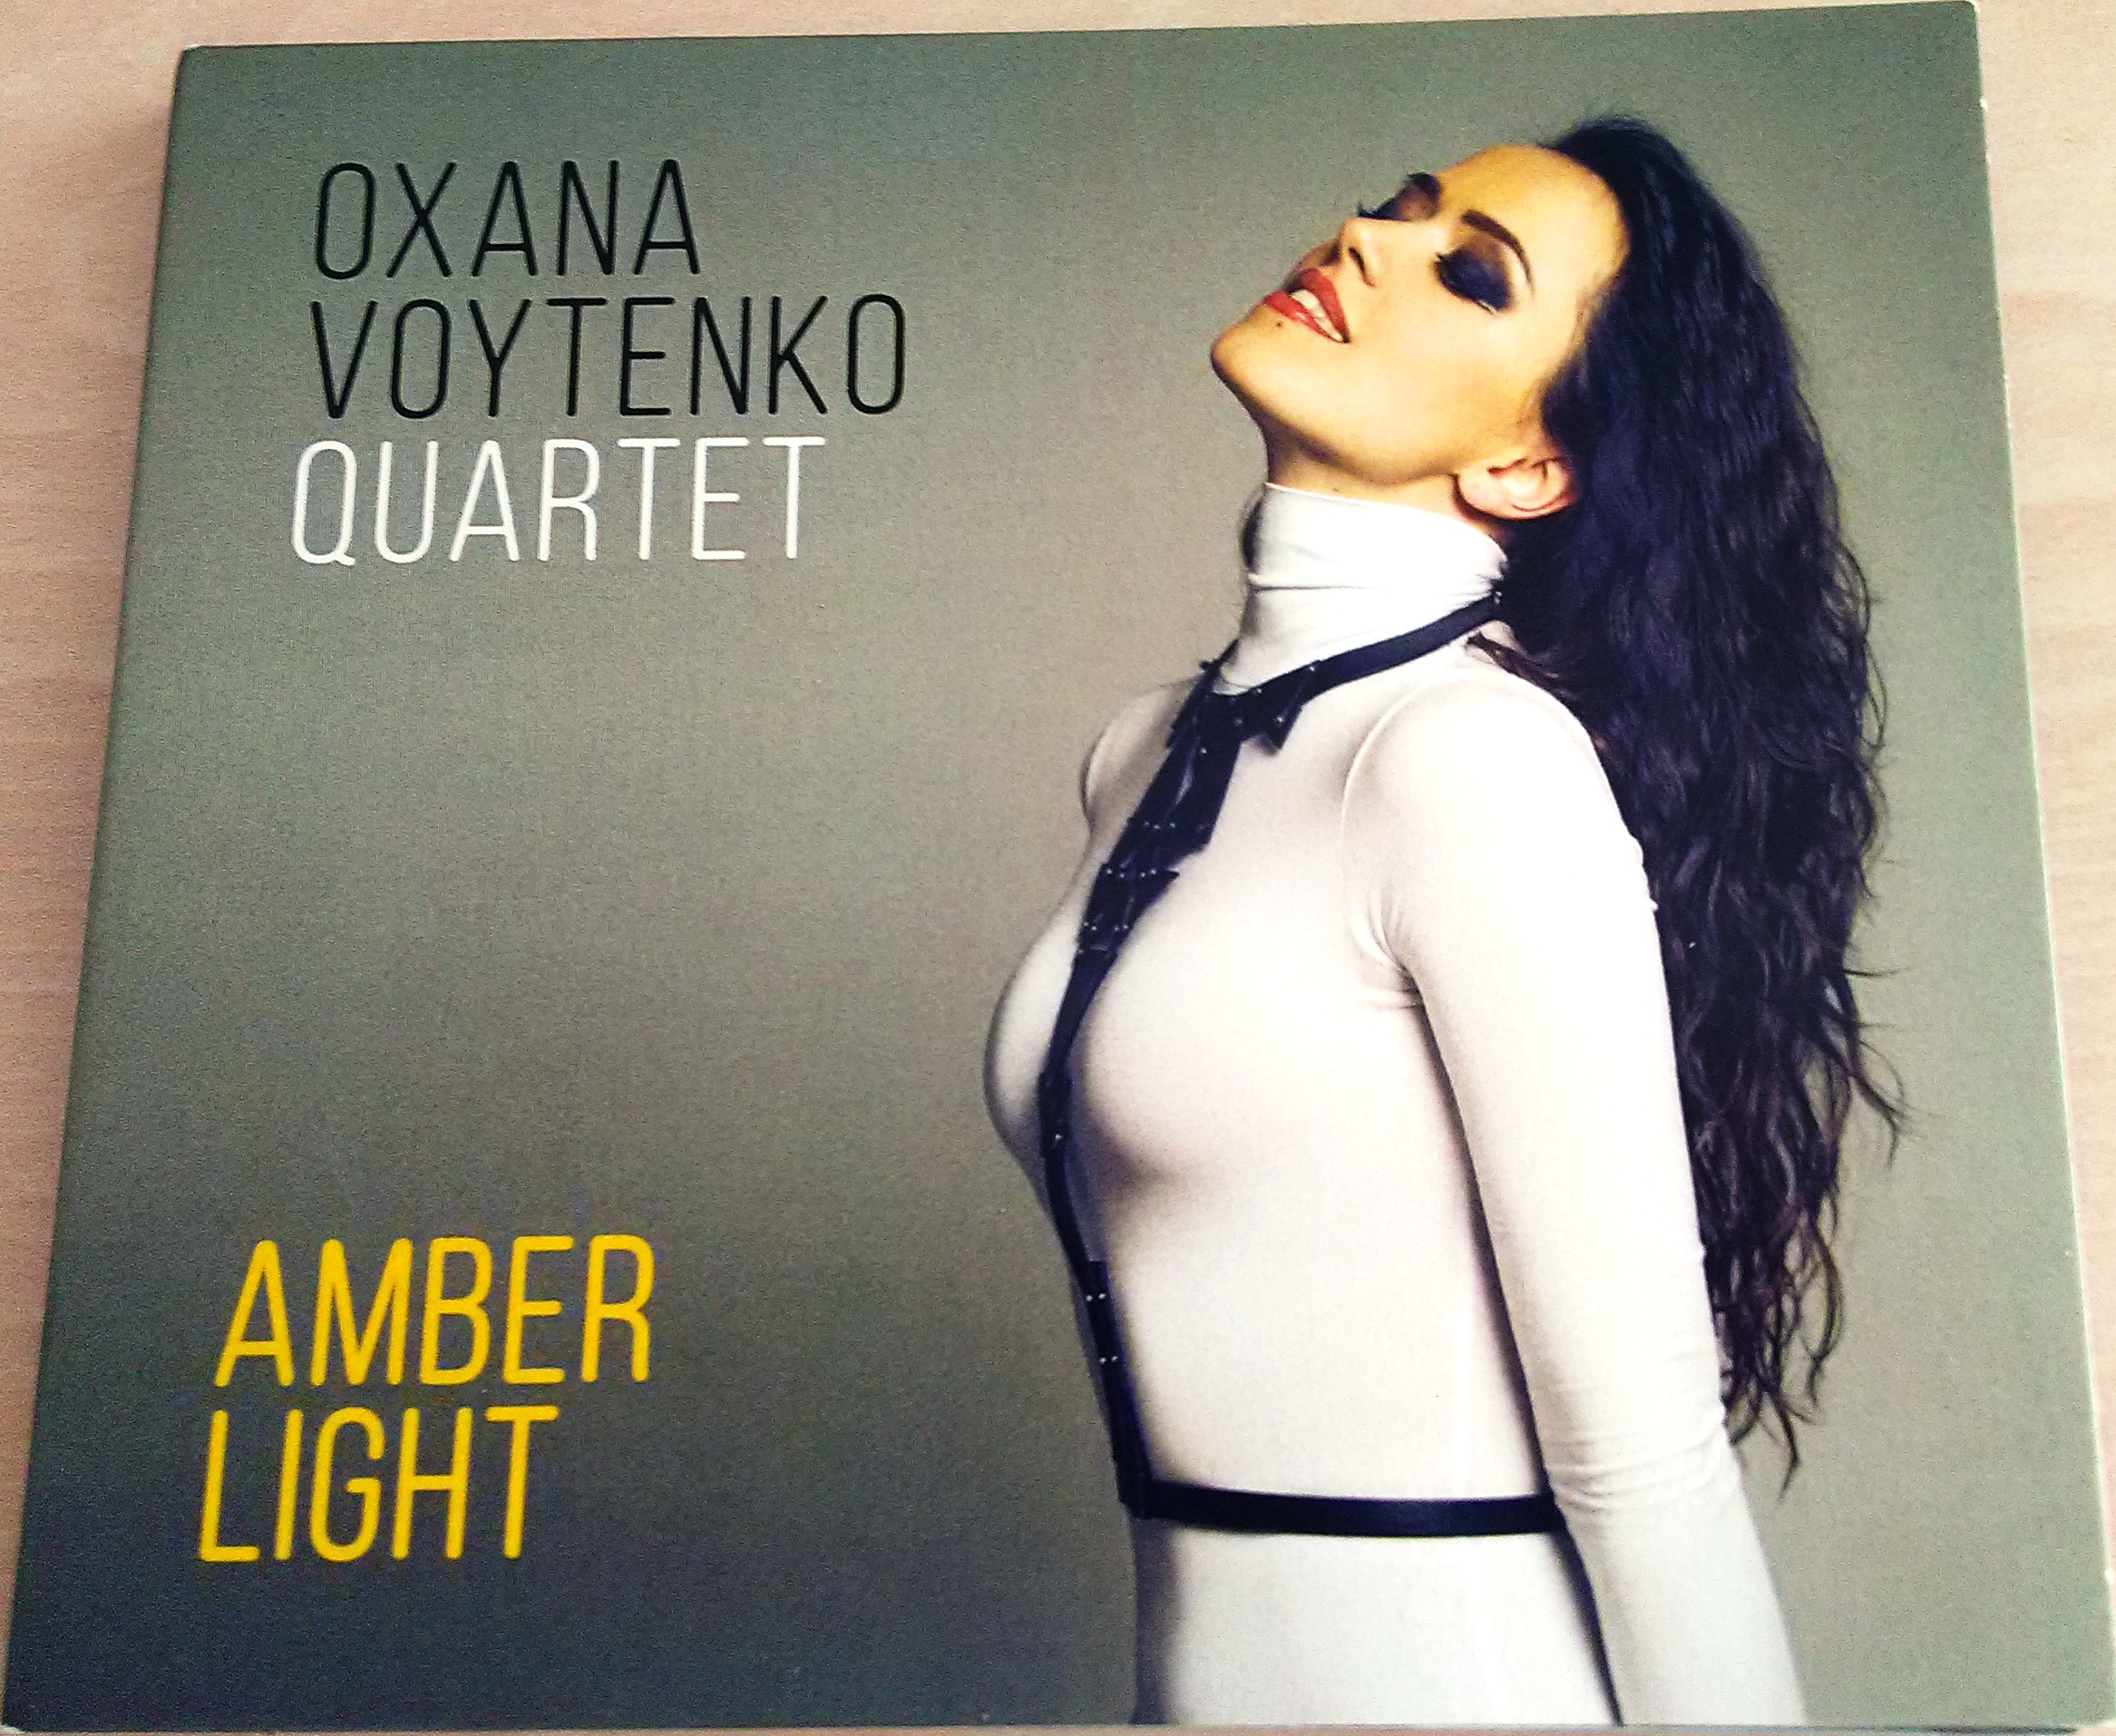 Oxana Voytenko envoie “Amber Light”, une luminosité qui nous vient de la Russie.